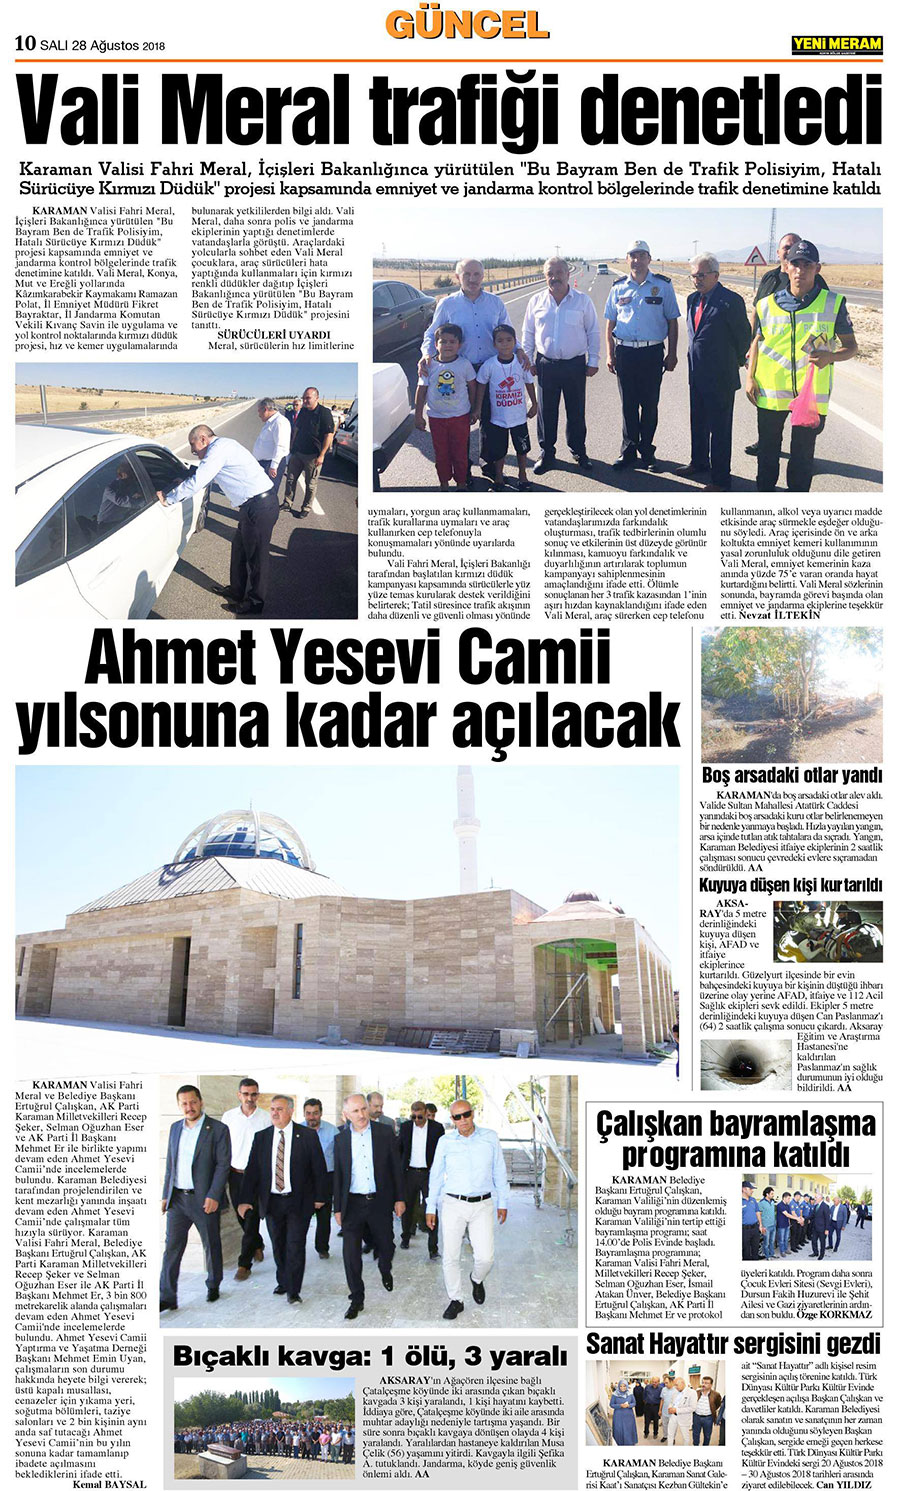 28 Ağustos 2018 Yeni Meram Gazetesi